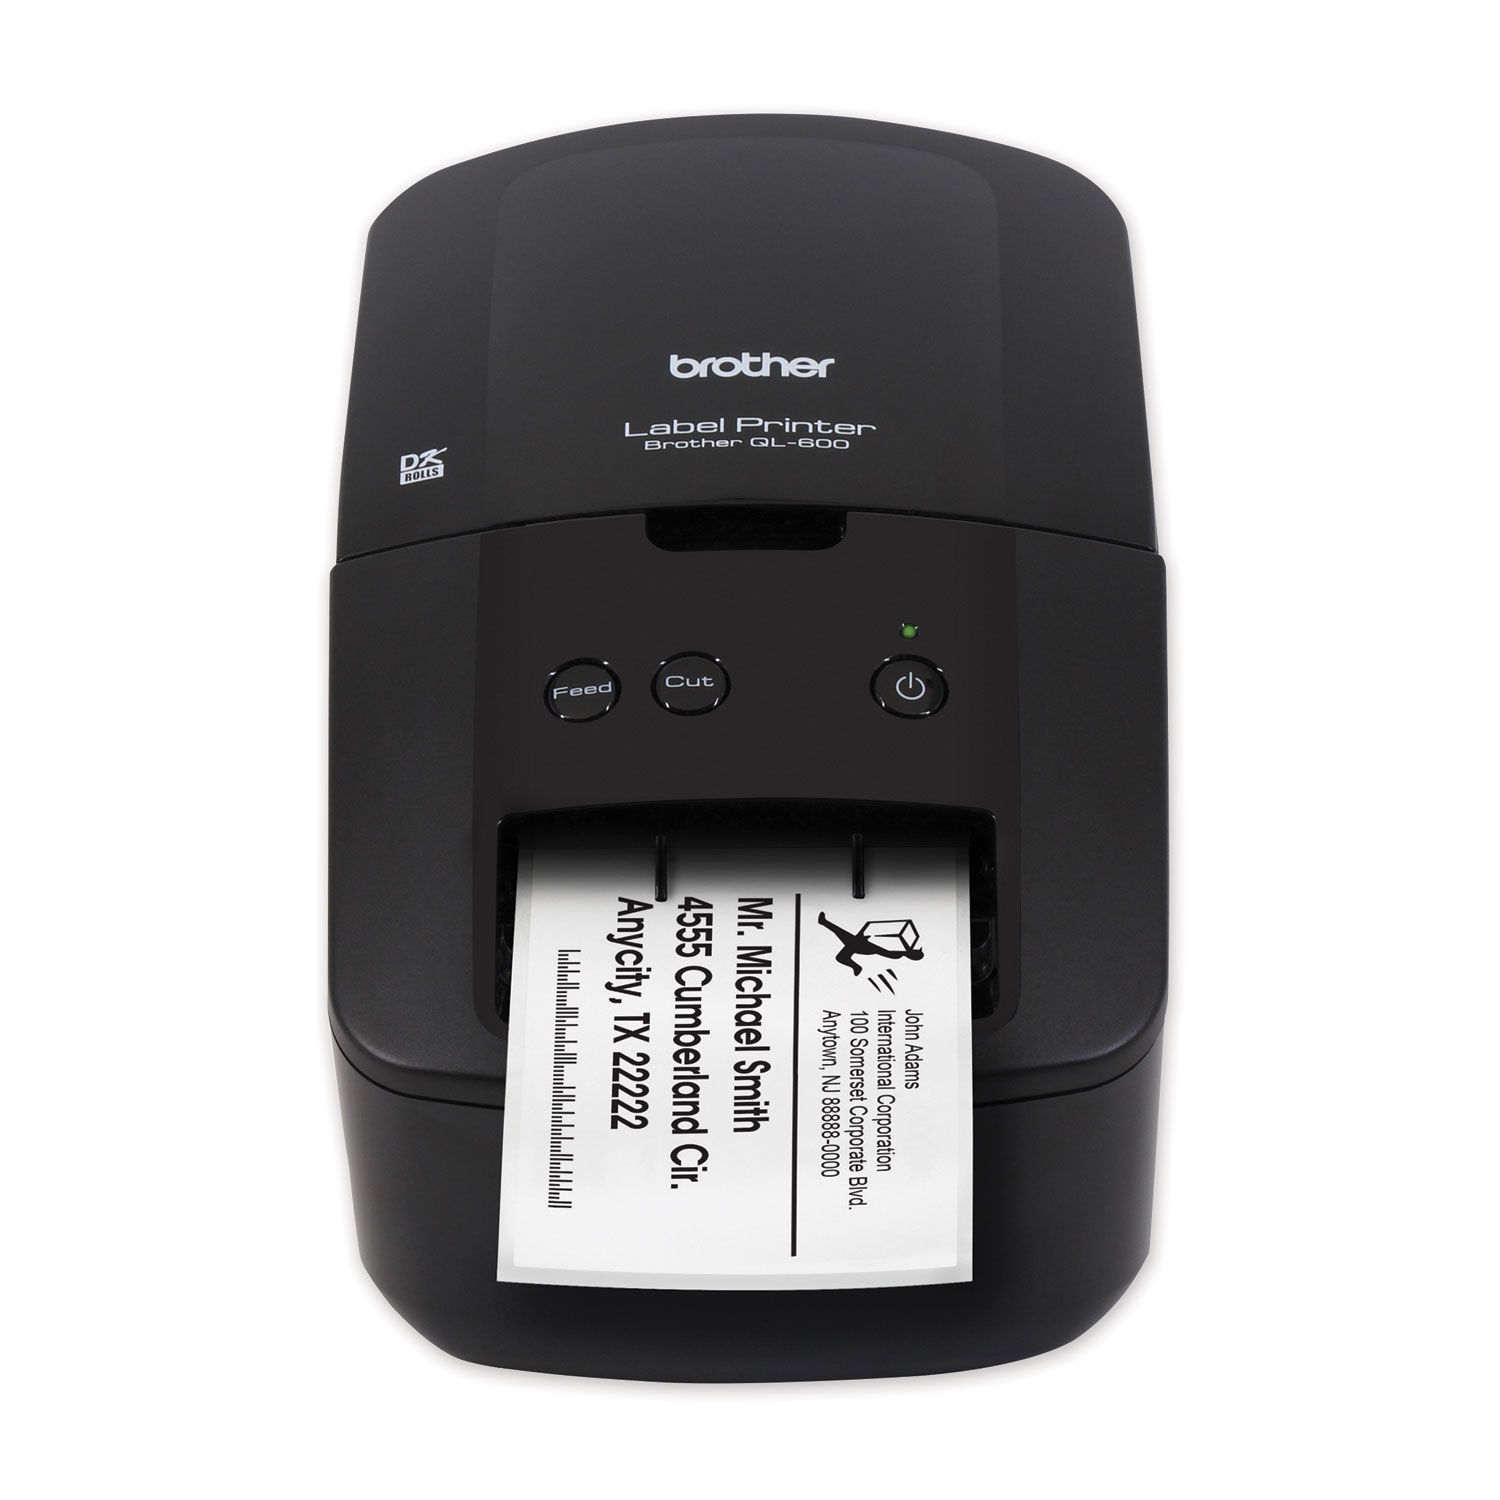  Brother QL600 QL-600 Economic Desktop Label Printer, 44 Labels/min Print Speed, 5.1 x 8.8 x 6.1 (BRTQL600) 